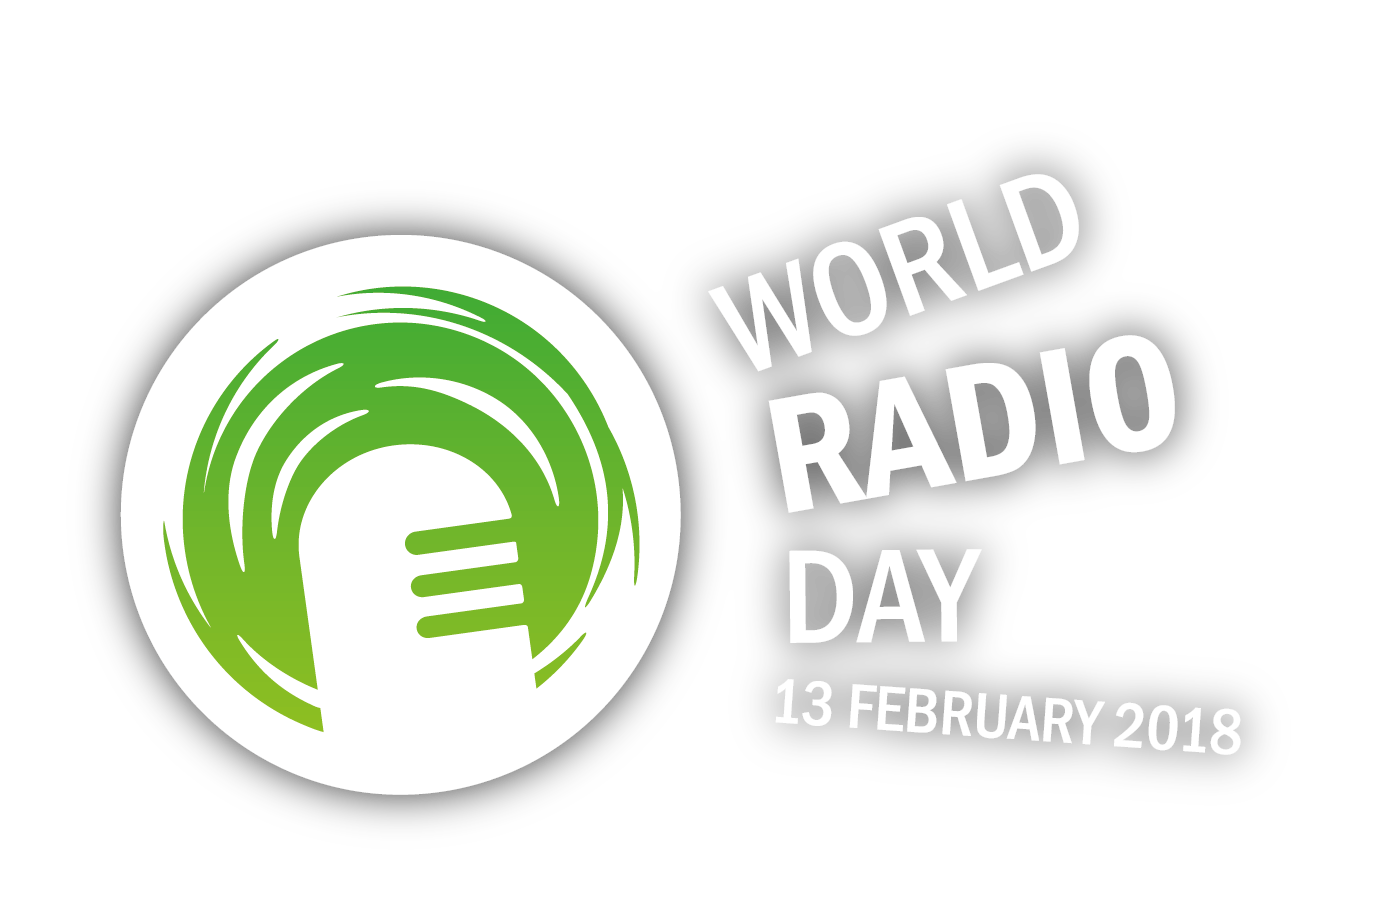 Martedì 13 febbraio è la Giornata mondiale della radio